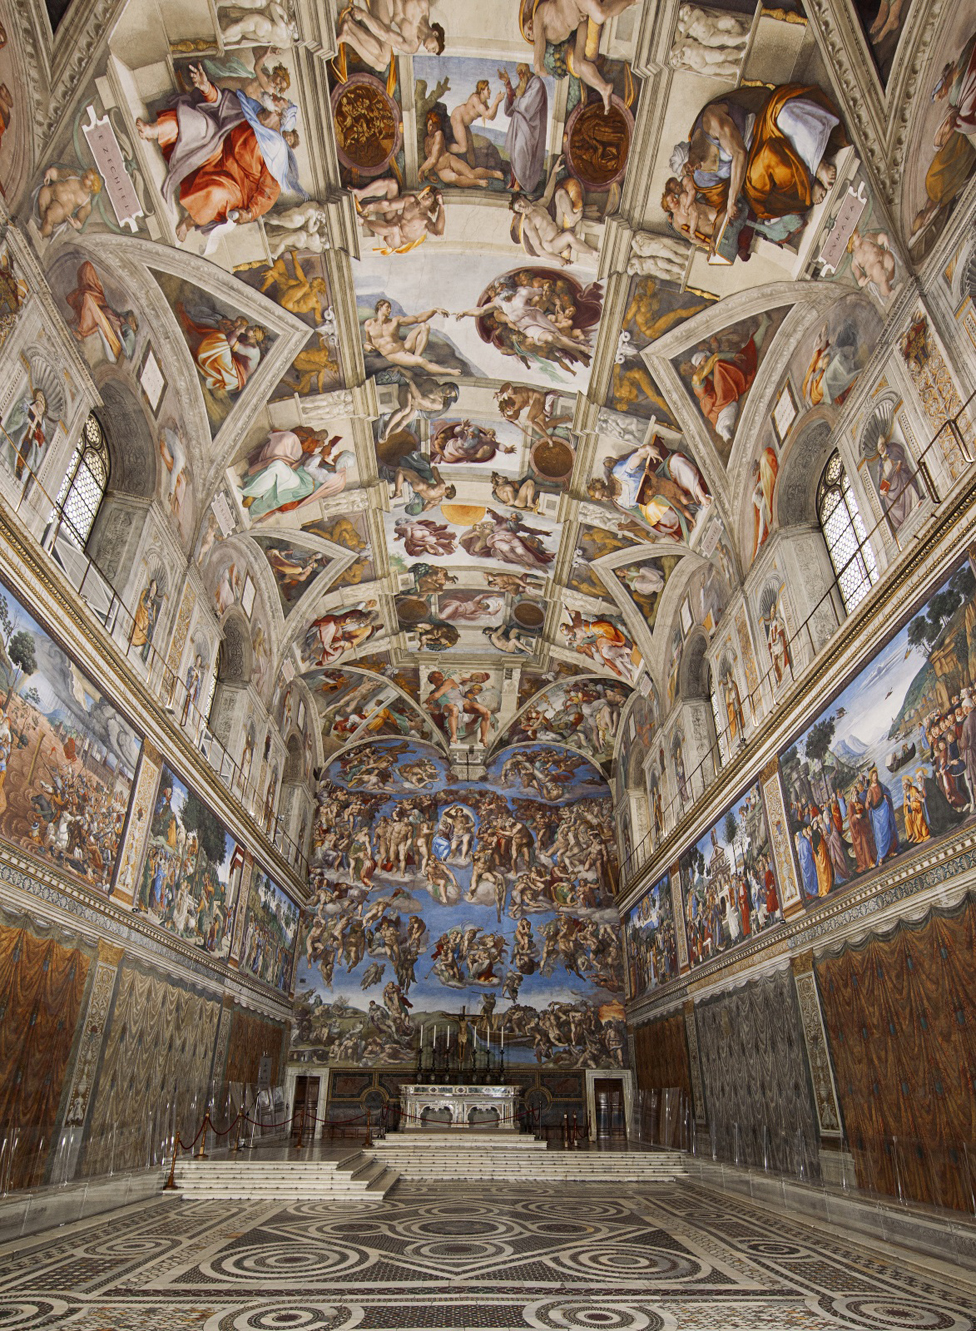 Виртуальный тур дает вам возможность полюбоваться великолепной Сикстинской капеллой в Ватикане, включая потрясающе красивый потолок Микеланджело